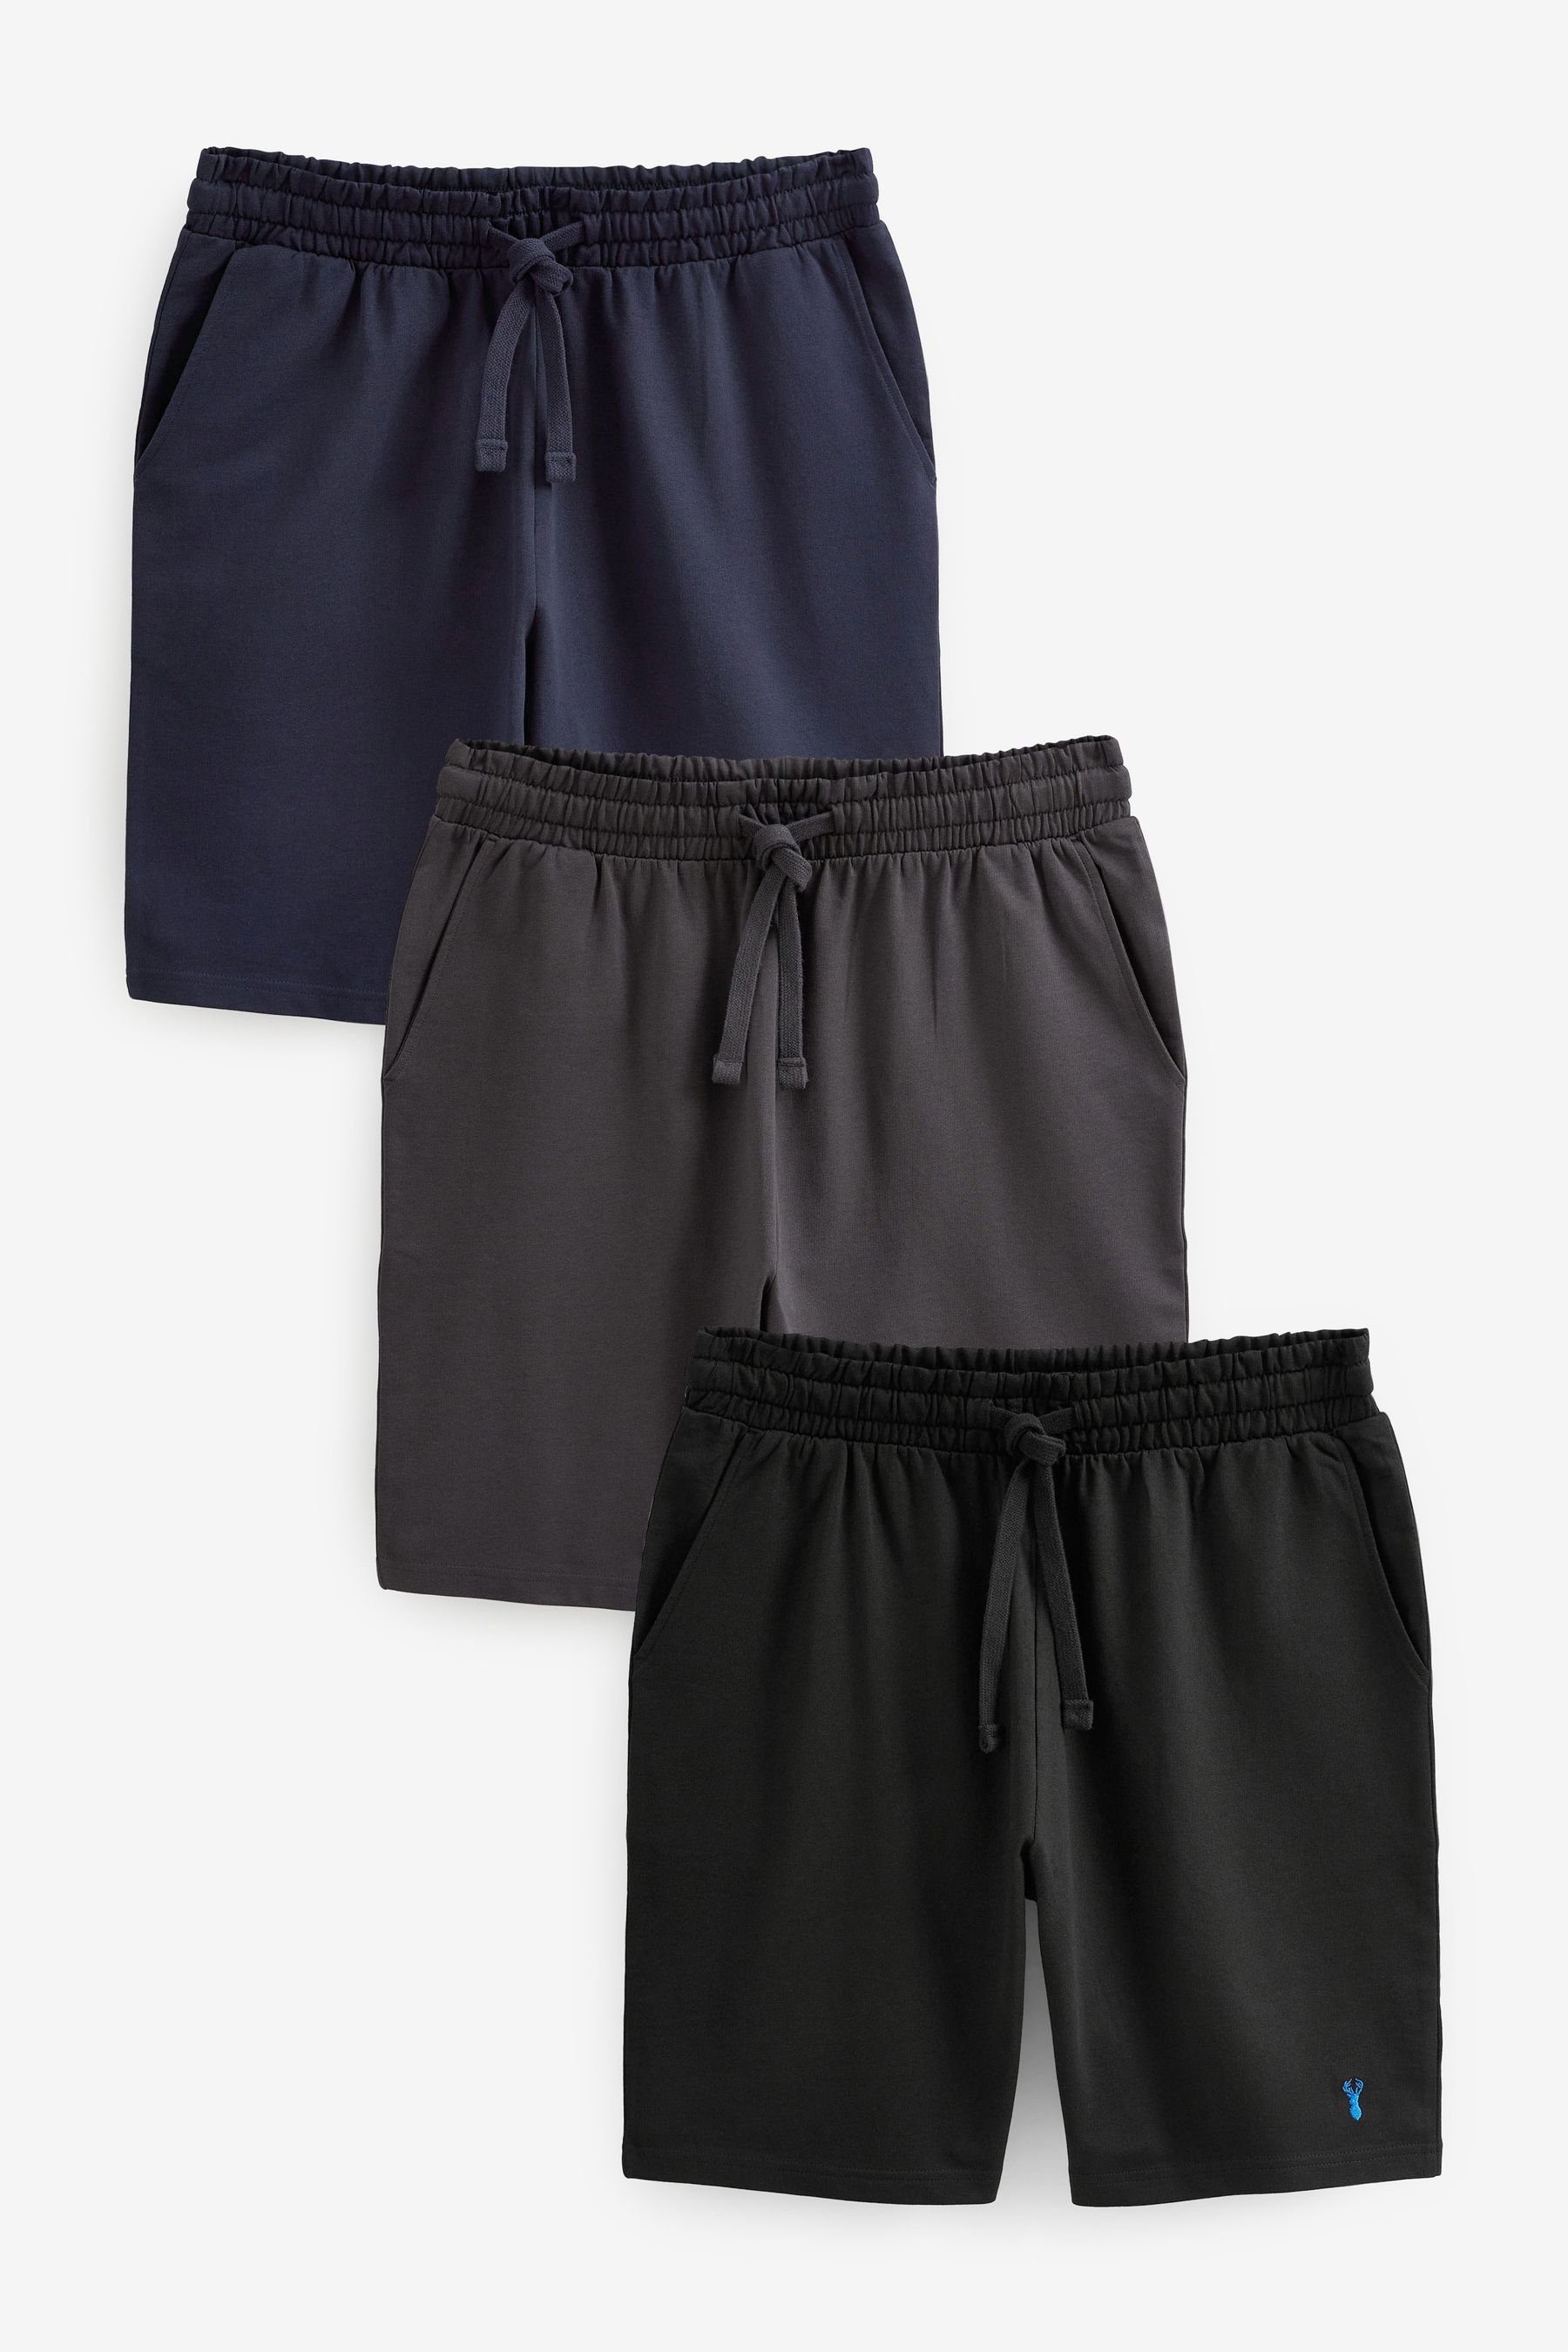 Navy Schlafshorts Leichte Next Shorts, Blue/Grey/Black 3er-Pack (3-tlg)